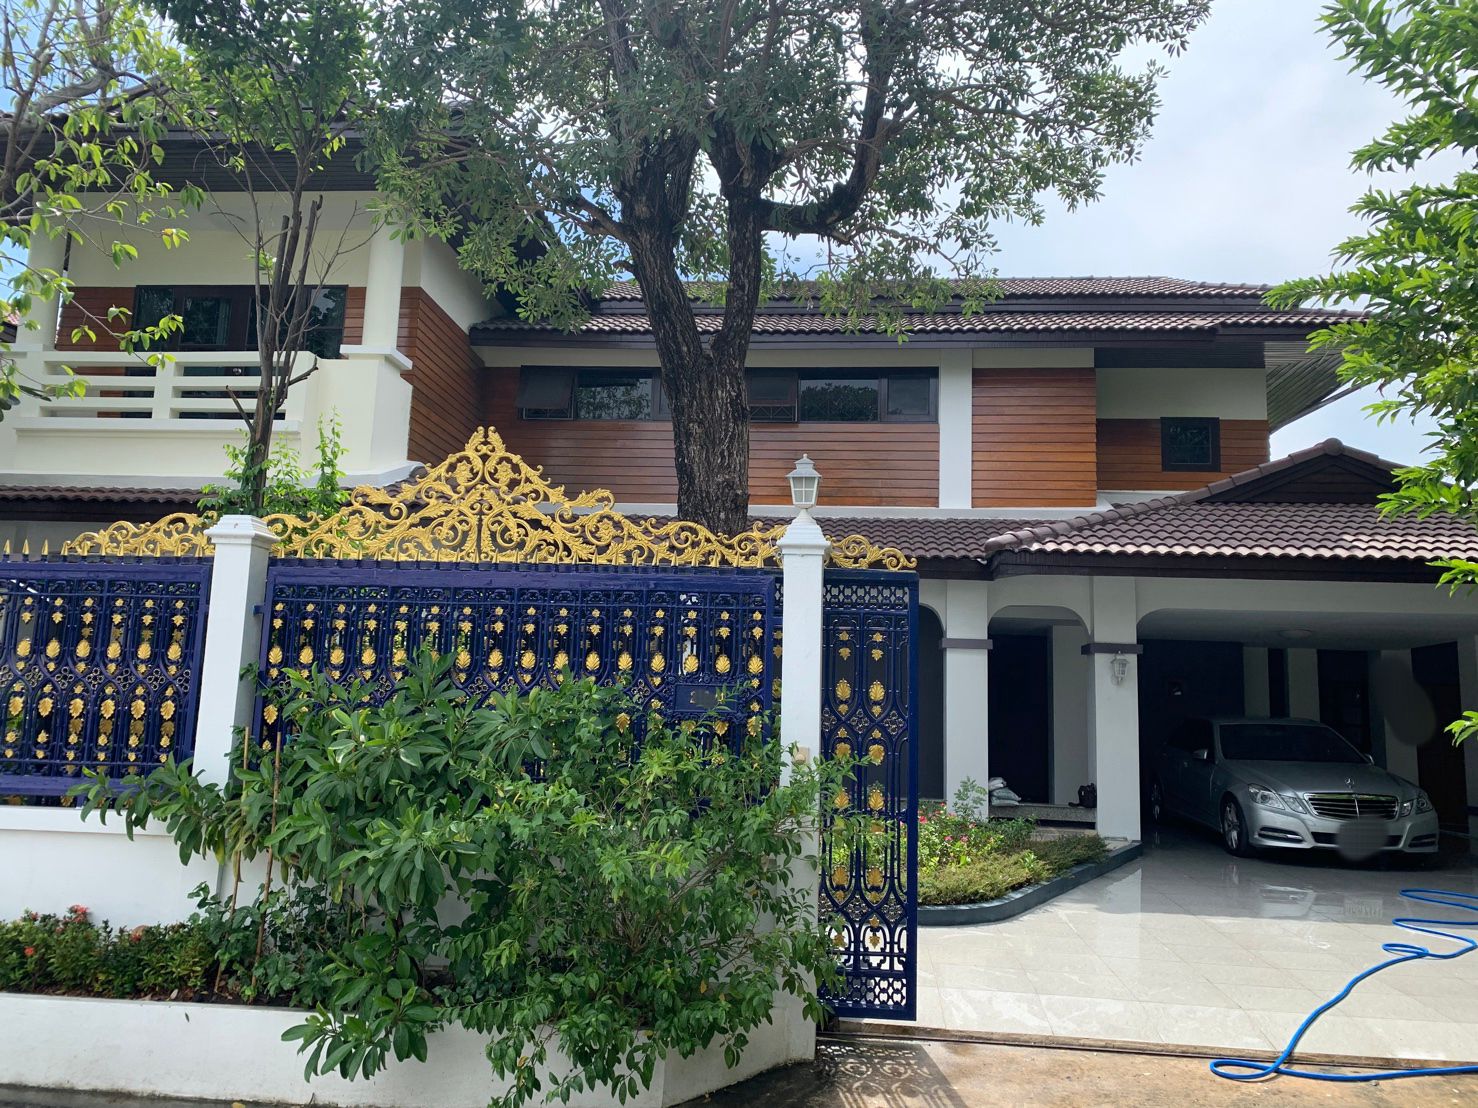 ขาย บ้านเดี่ยว สินบดี 3 ประชาอุทิศ 72 Sinbordee 3 Prachauthit 72 หลังริม  ราคาดีสุด ฟรีโอนทุกอย่าง  